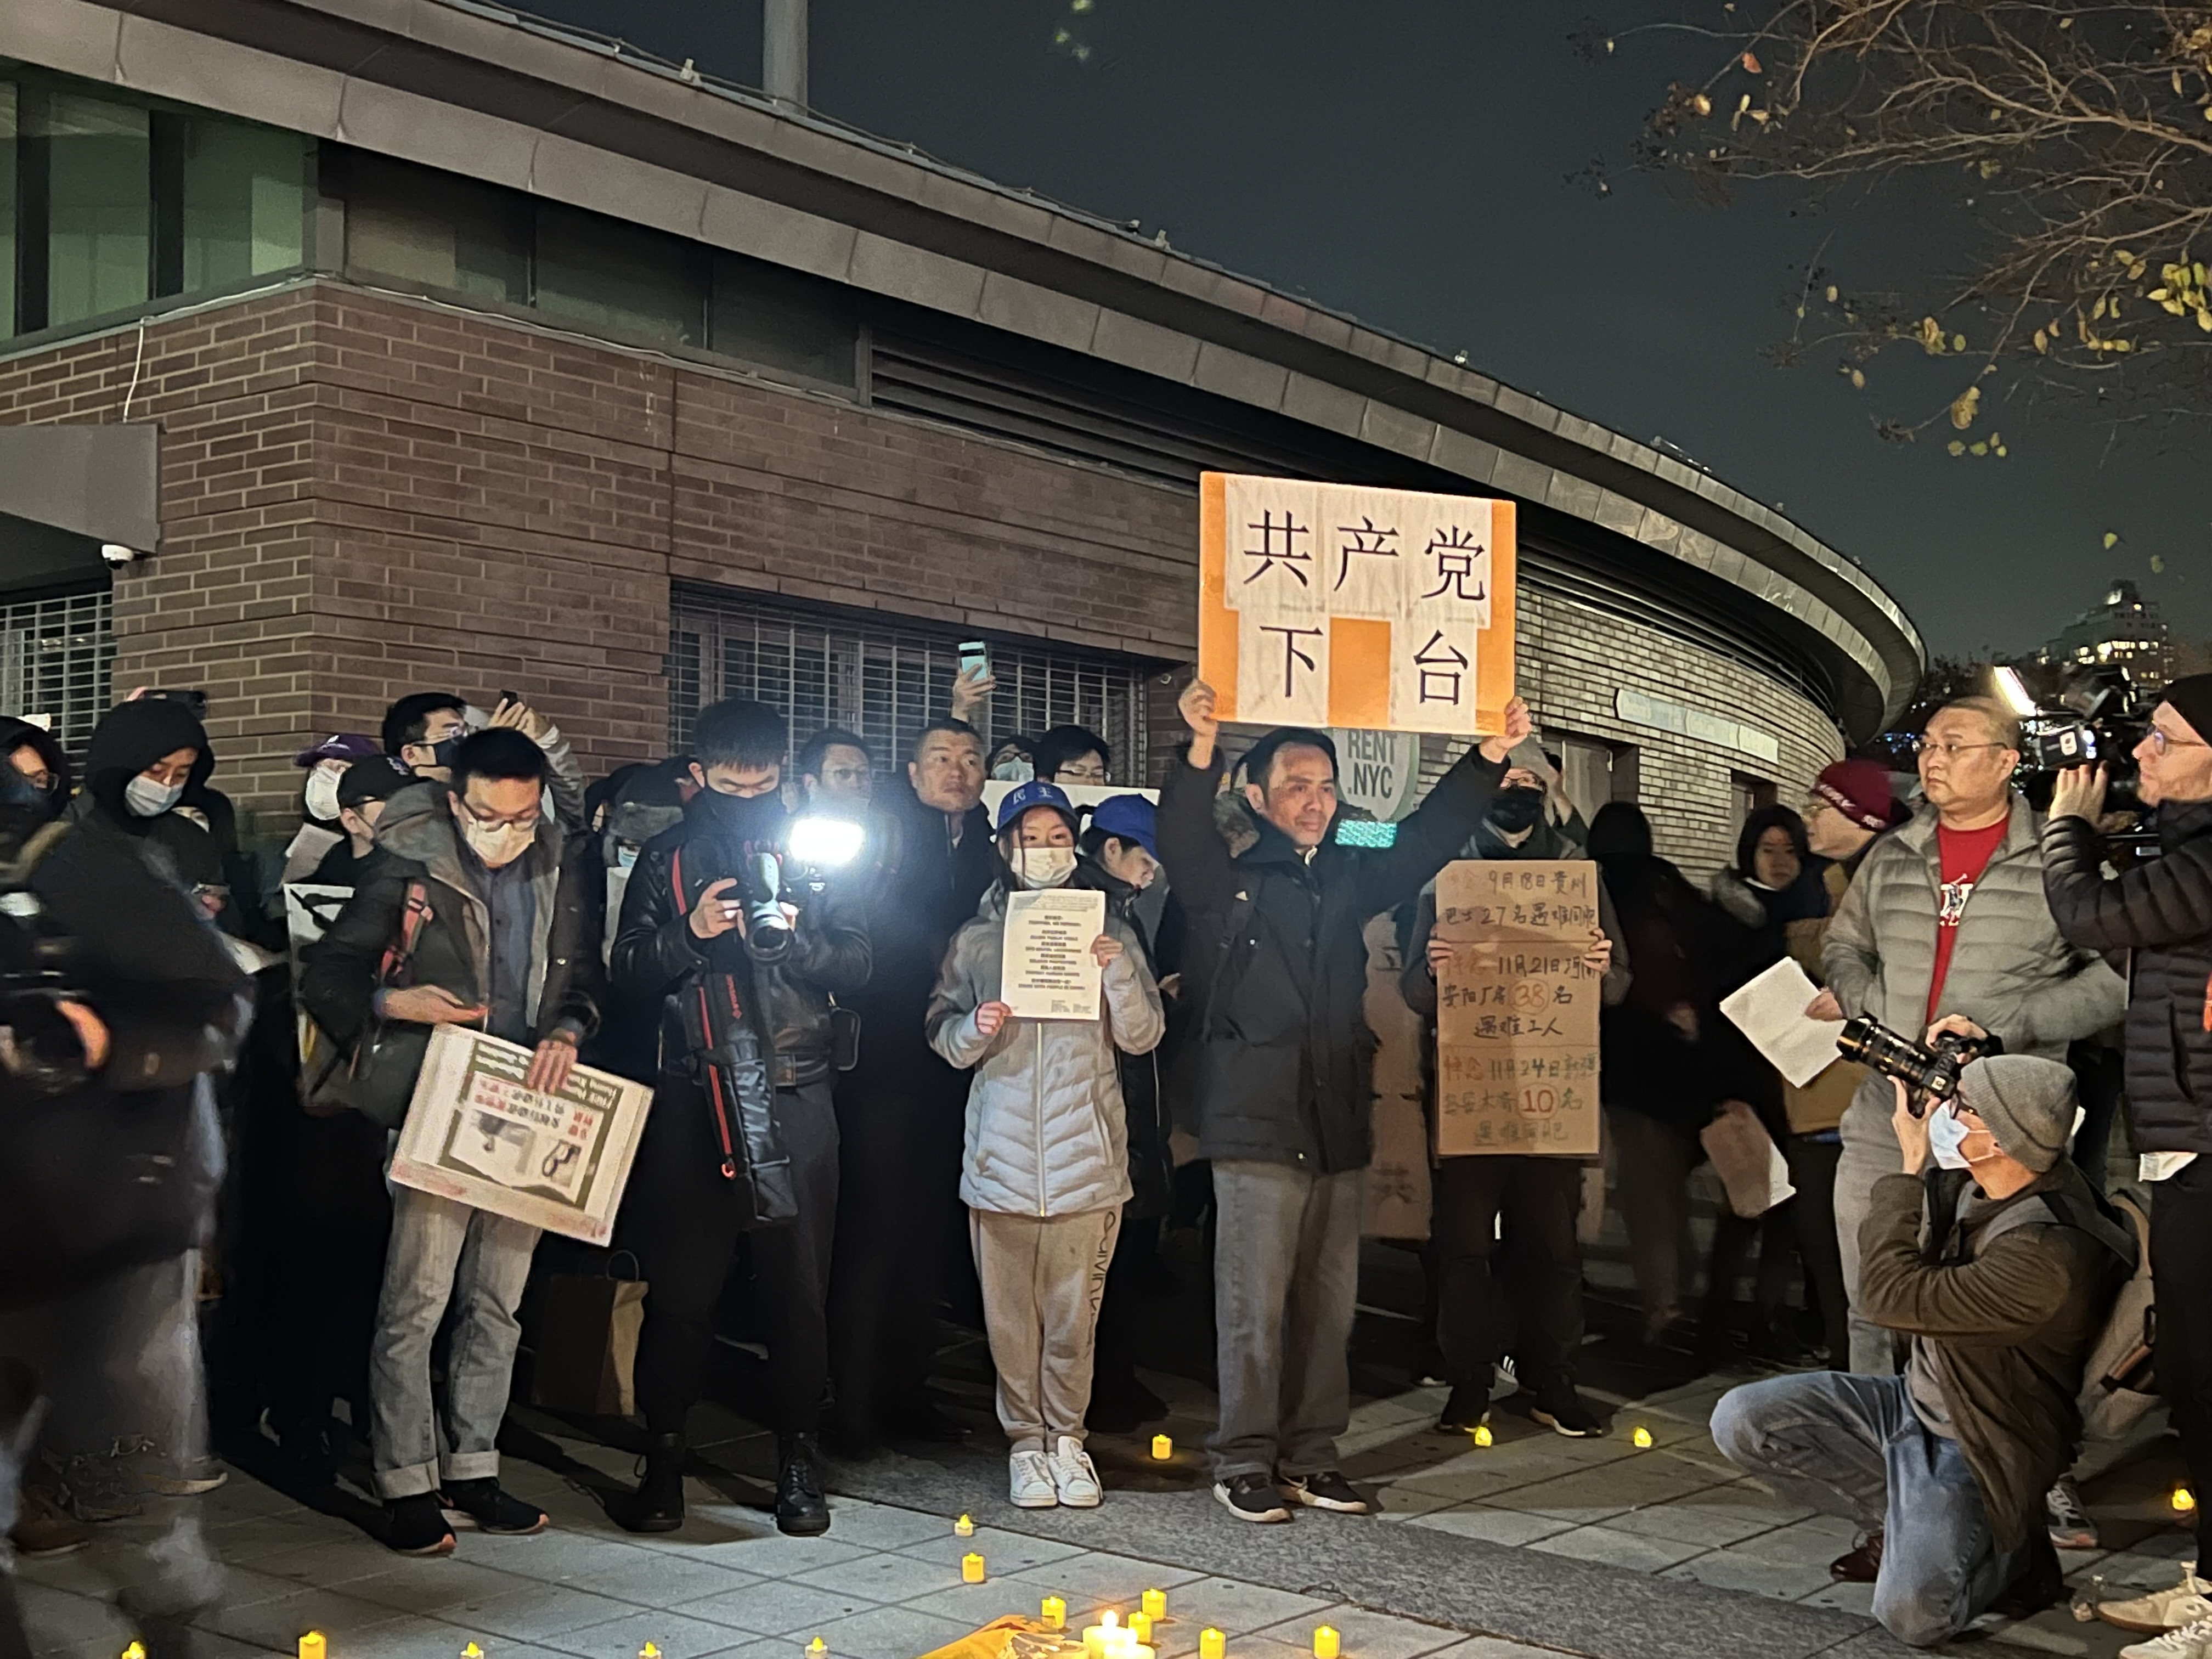 “共产党下台”上千中国留学生纽约中领馆前集会